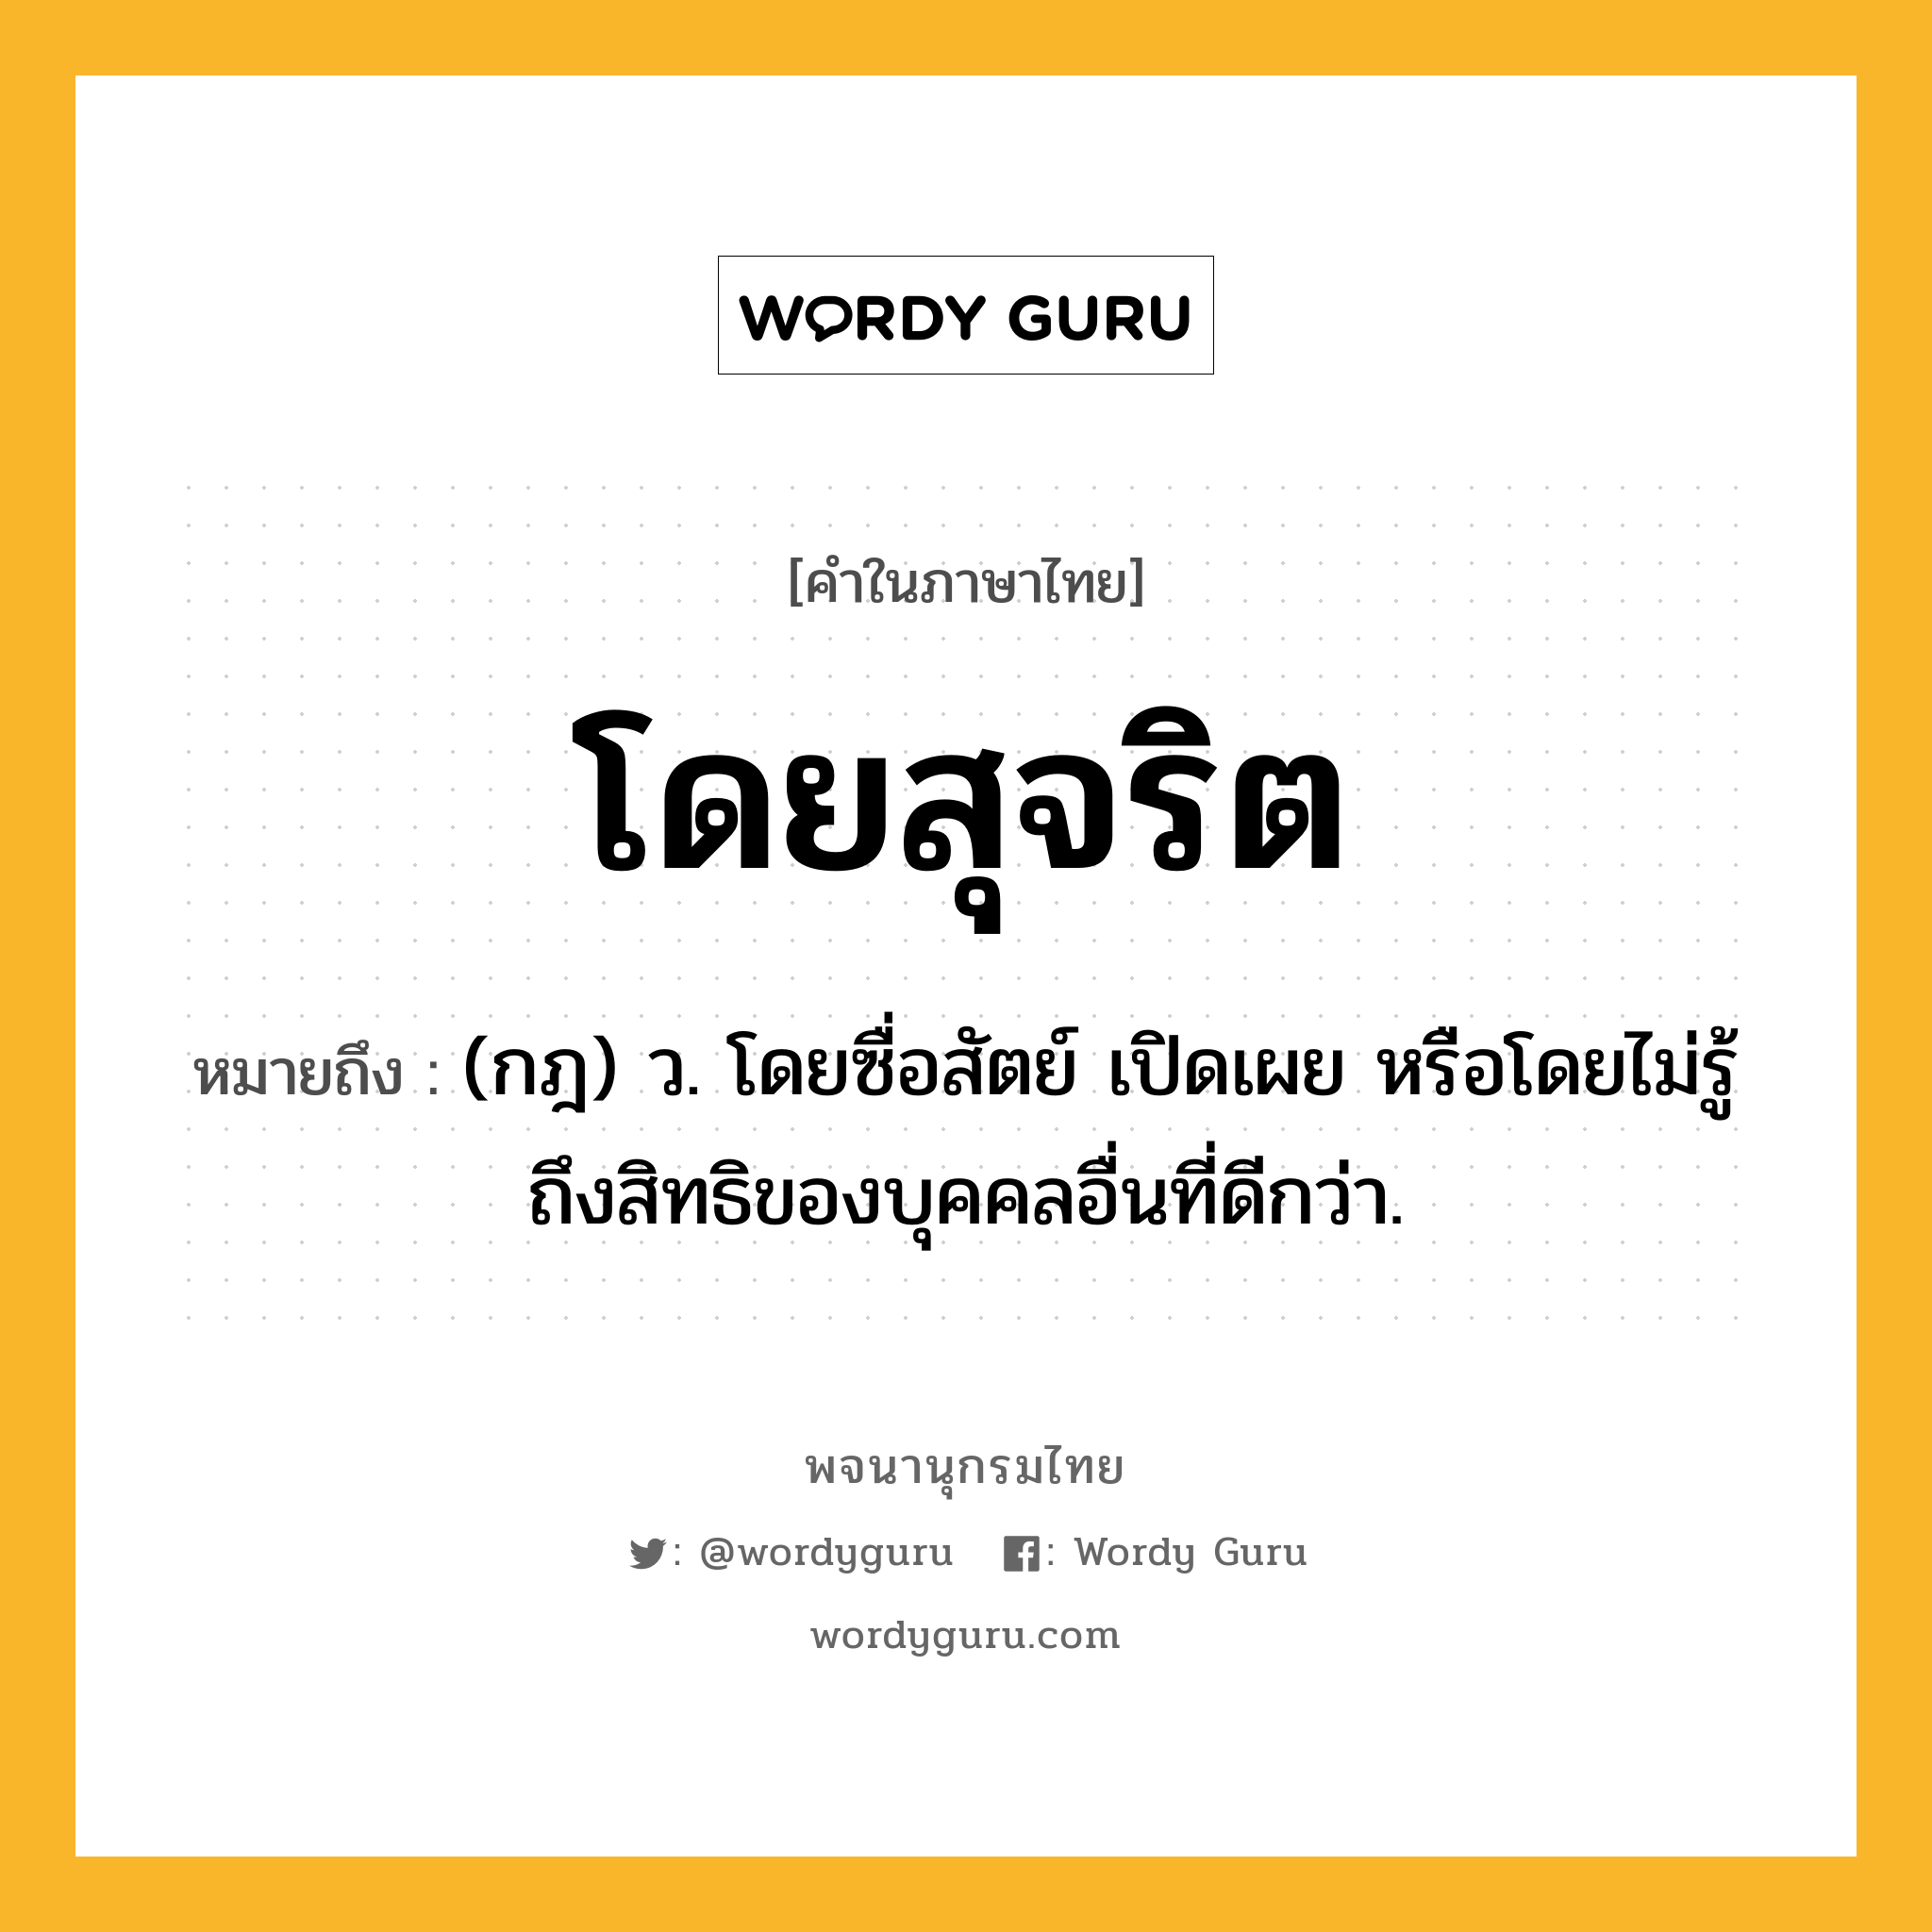 โดยสุจริต ความหมาย หมายถึงอะไร?, คำในภาษาไทย โดยสุจริต หมายถึง (กฎ) ว. โดยซื่อสัตย์ เปิดเผย หรือโดยไม่รู้ถึงสิทธิของบุคคลอื่นที่ดีกว่า.